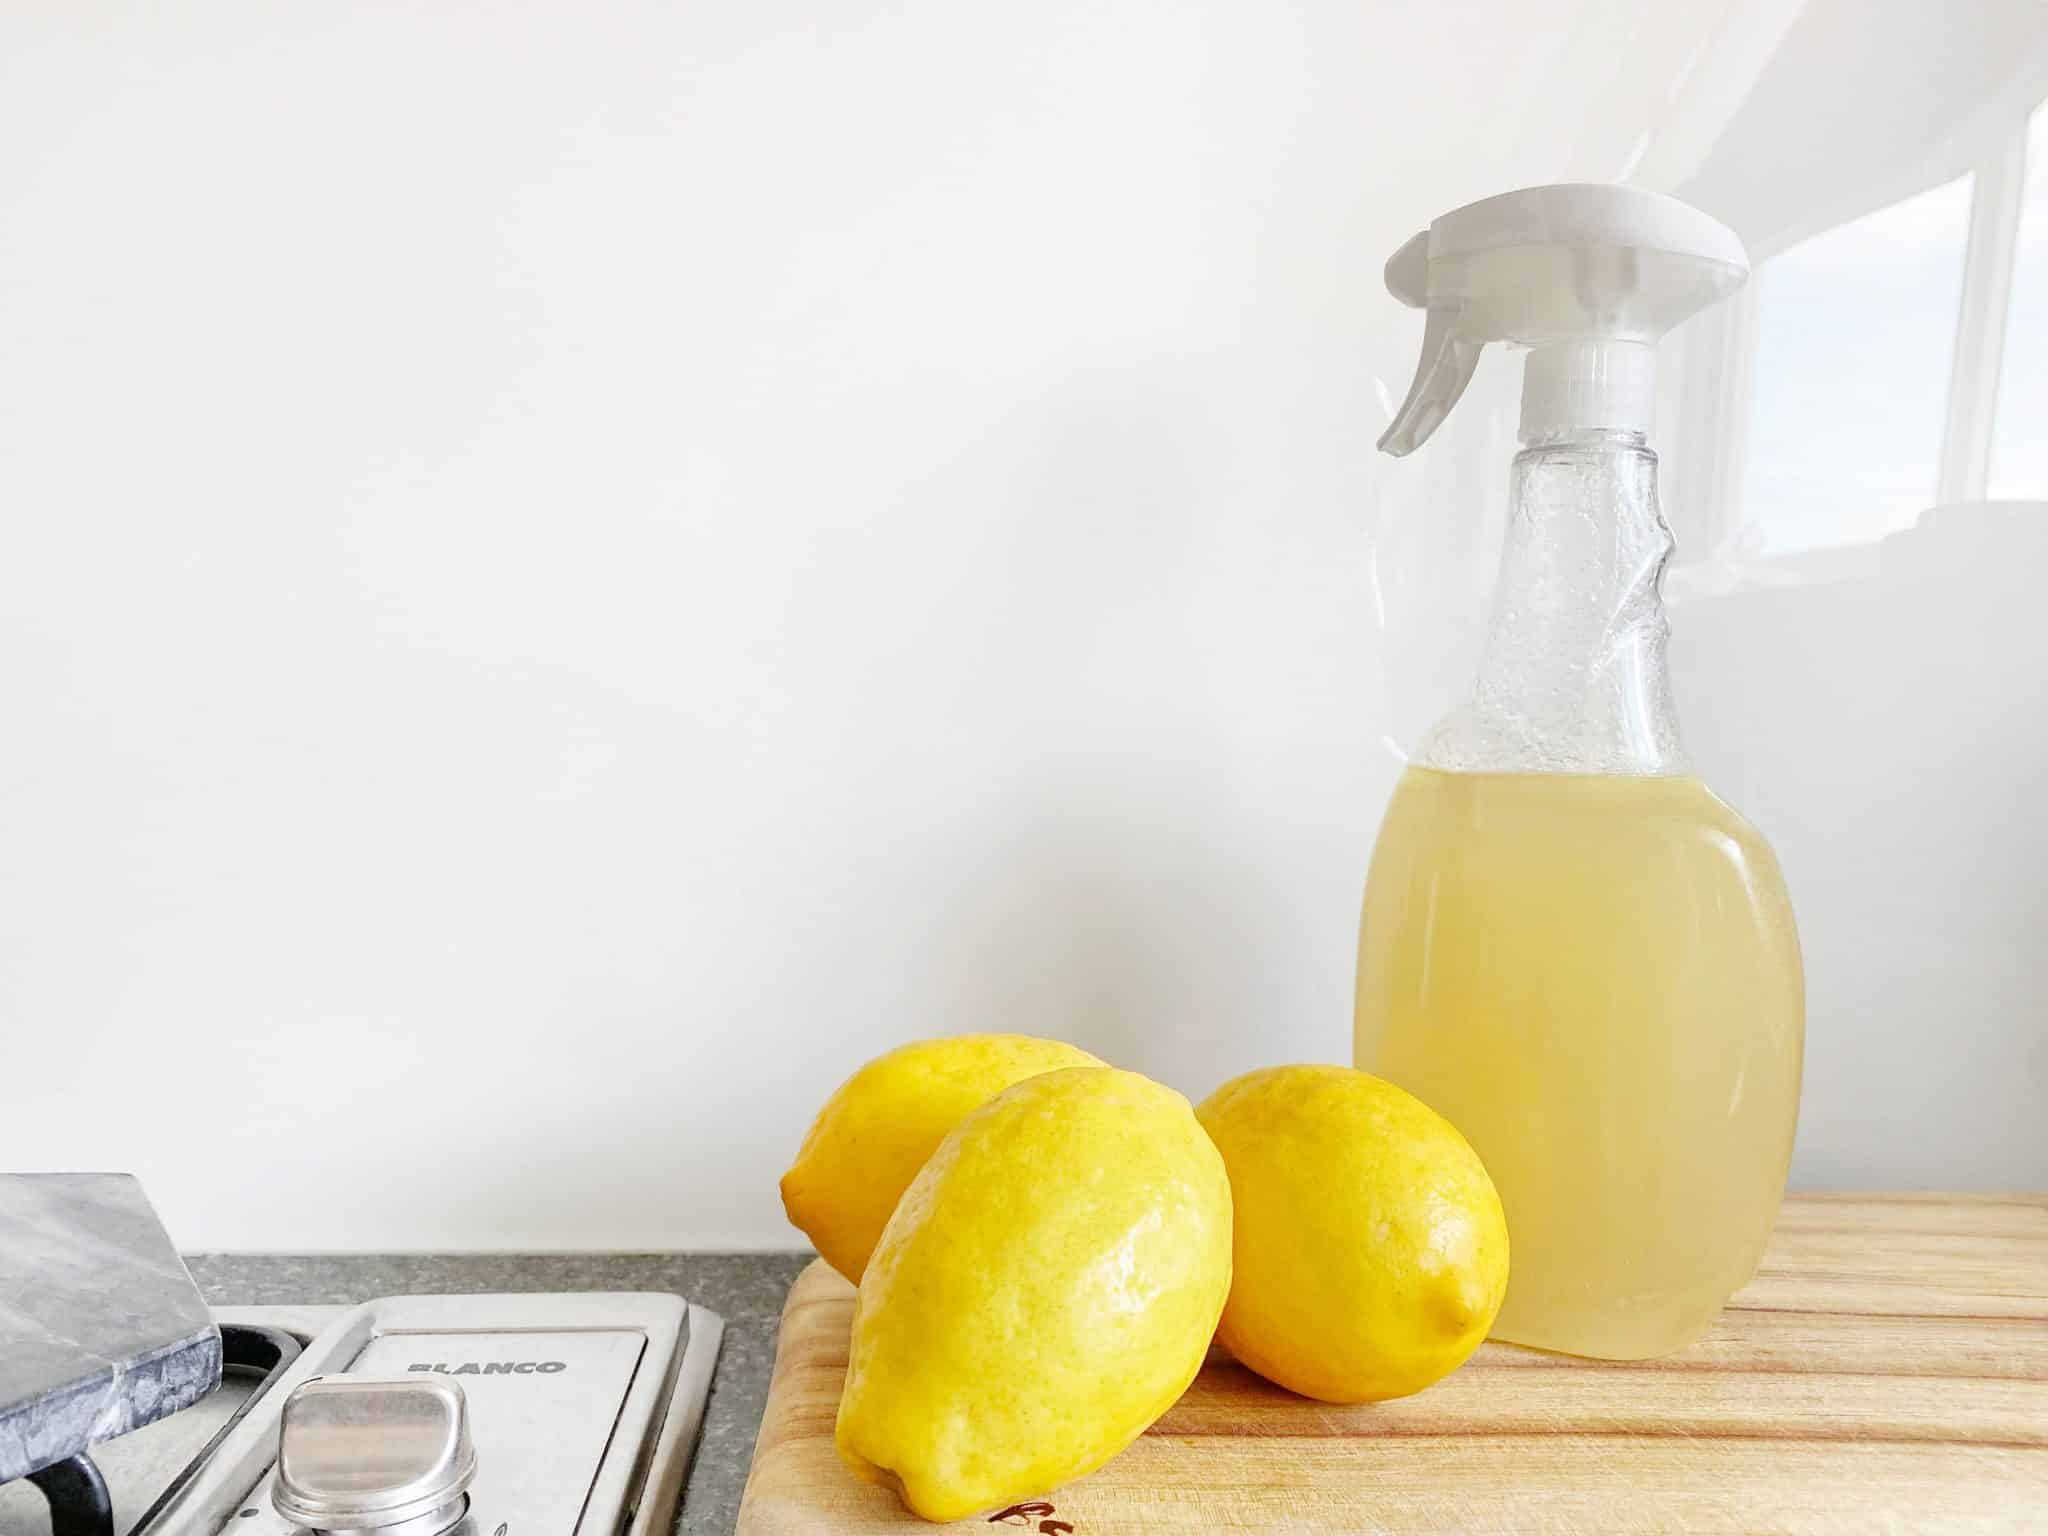 Des produits de nettoyage et du citron à côté d'une plaque de cuisson.